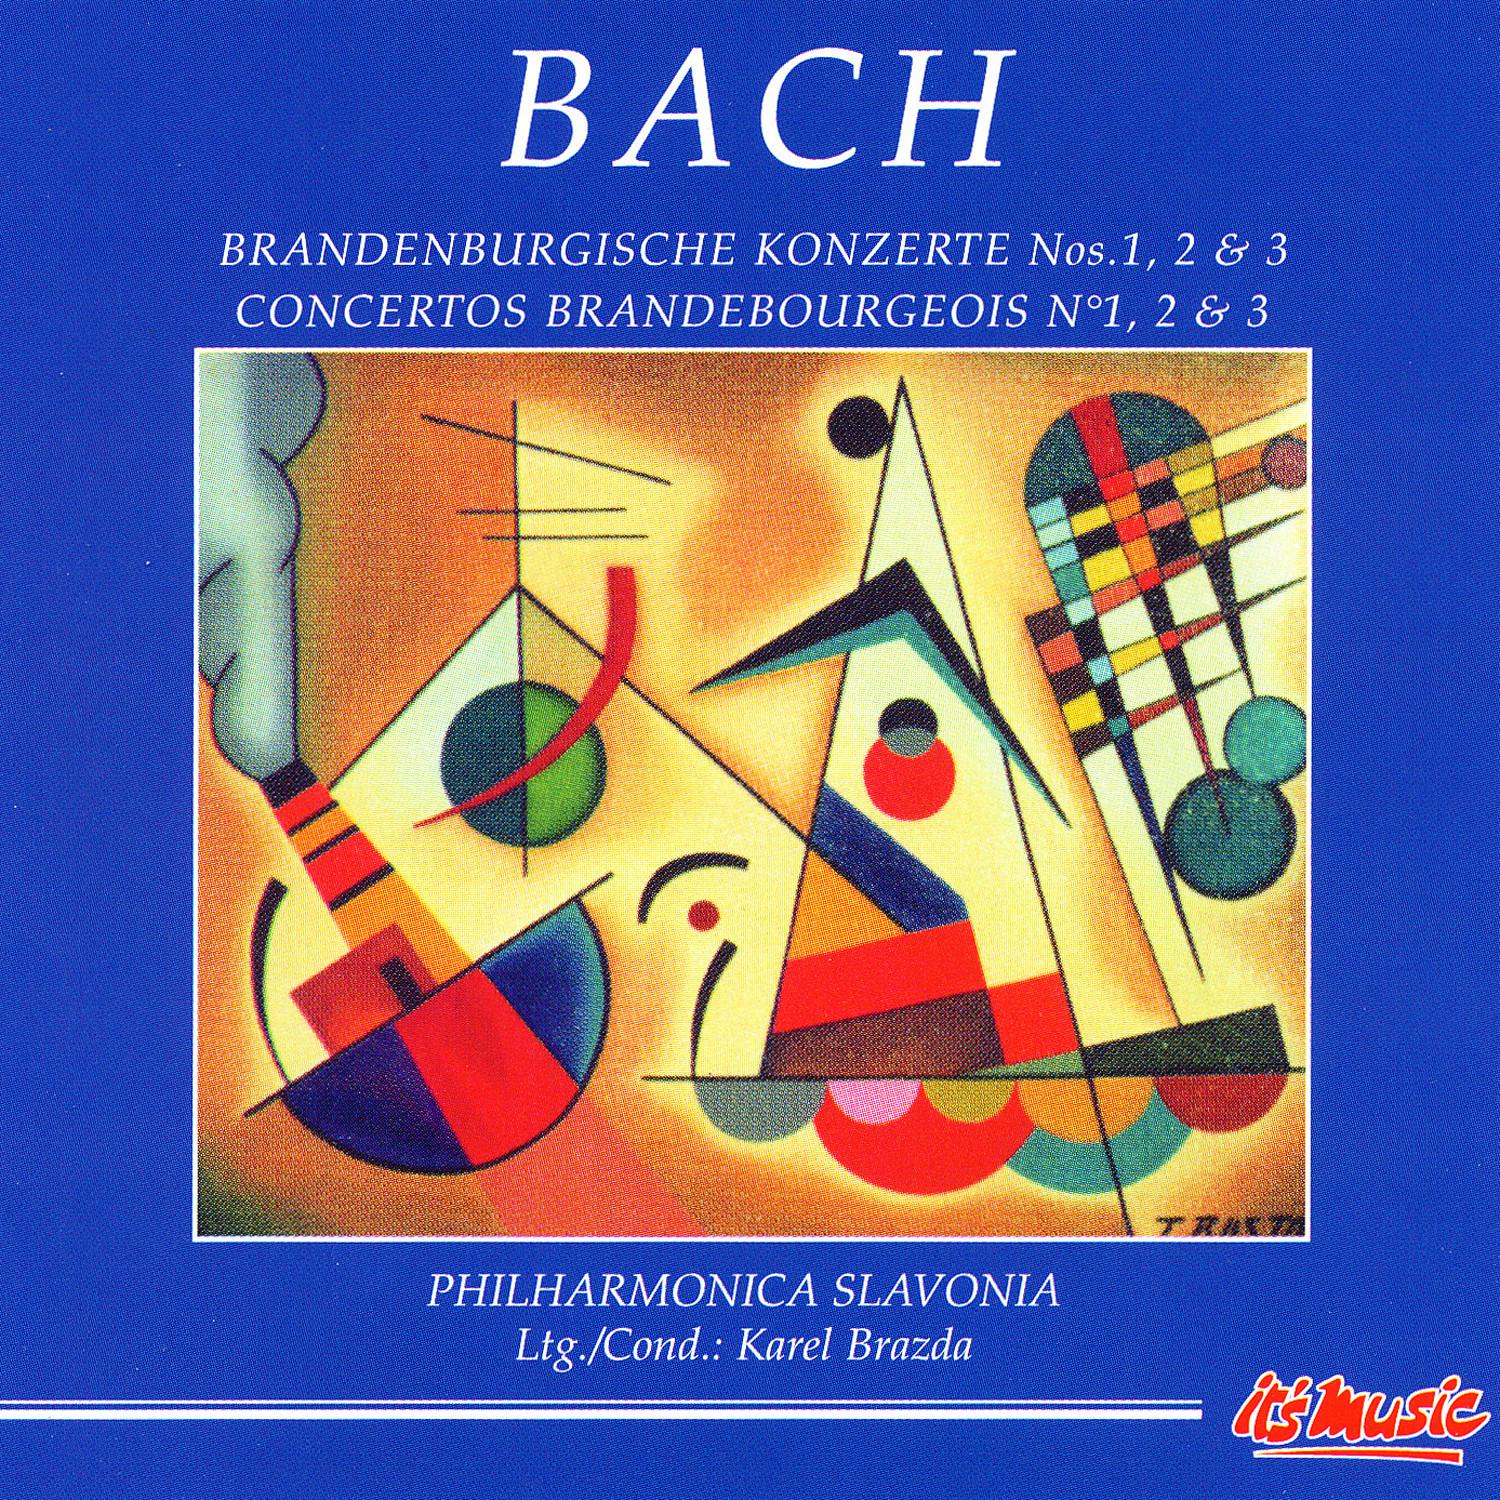 Brandenburg Concerto No. 2 in F major I. Allegro